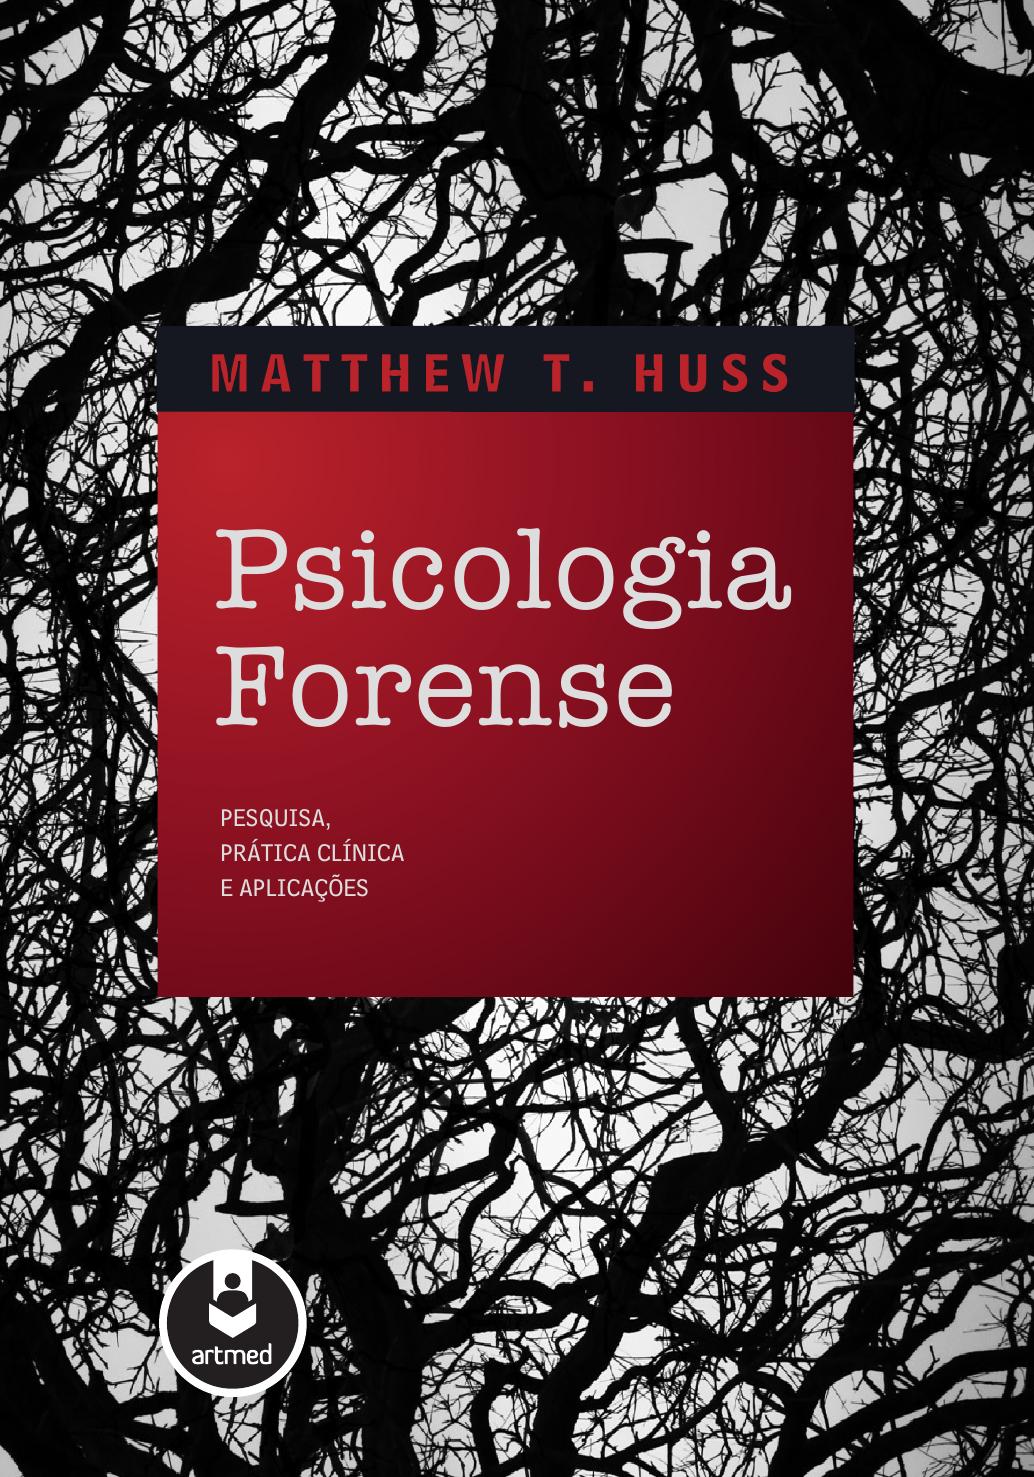 Psicologia forense : pesquisa, prática clínica e aplicações.